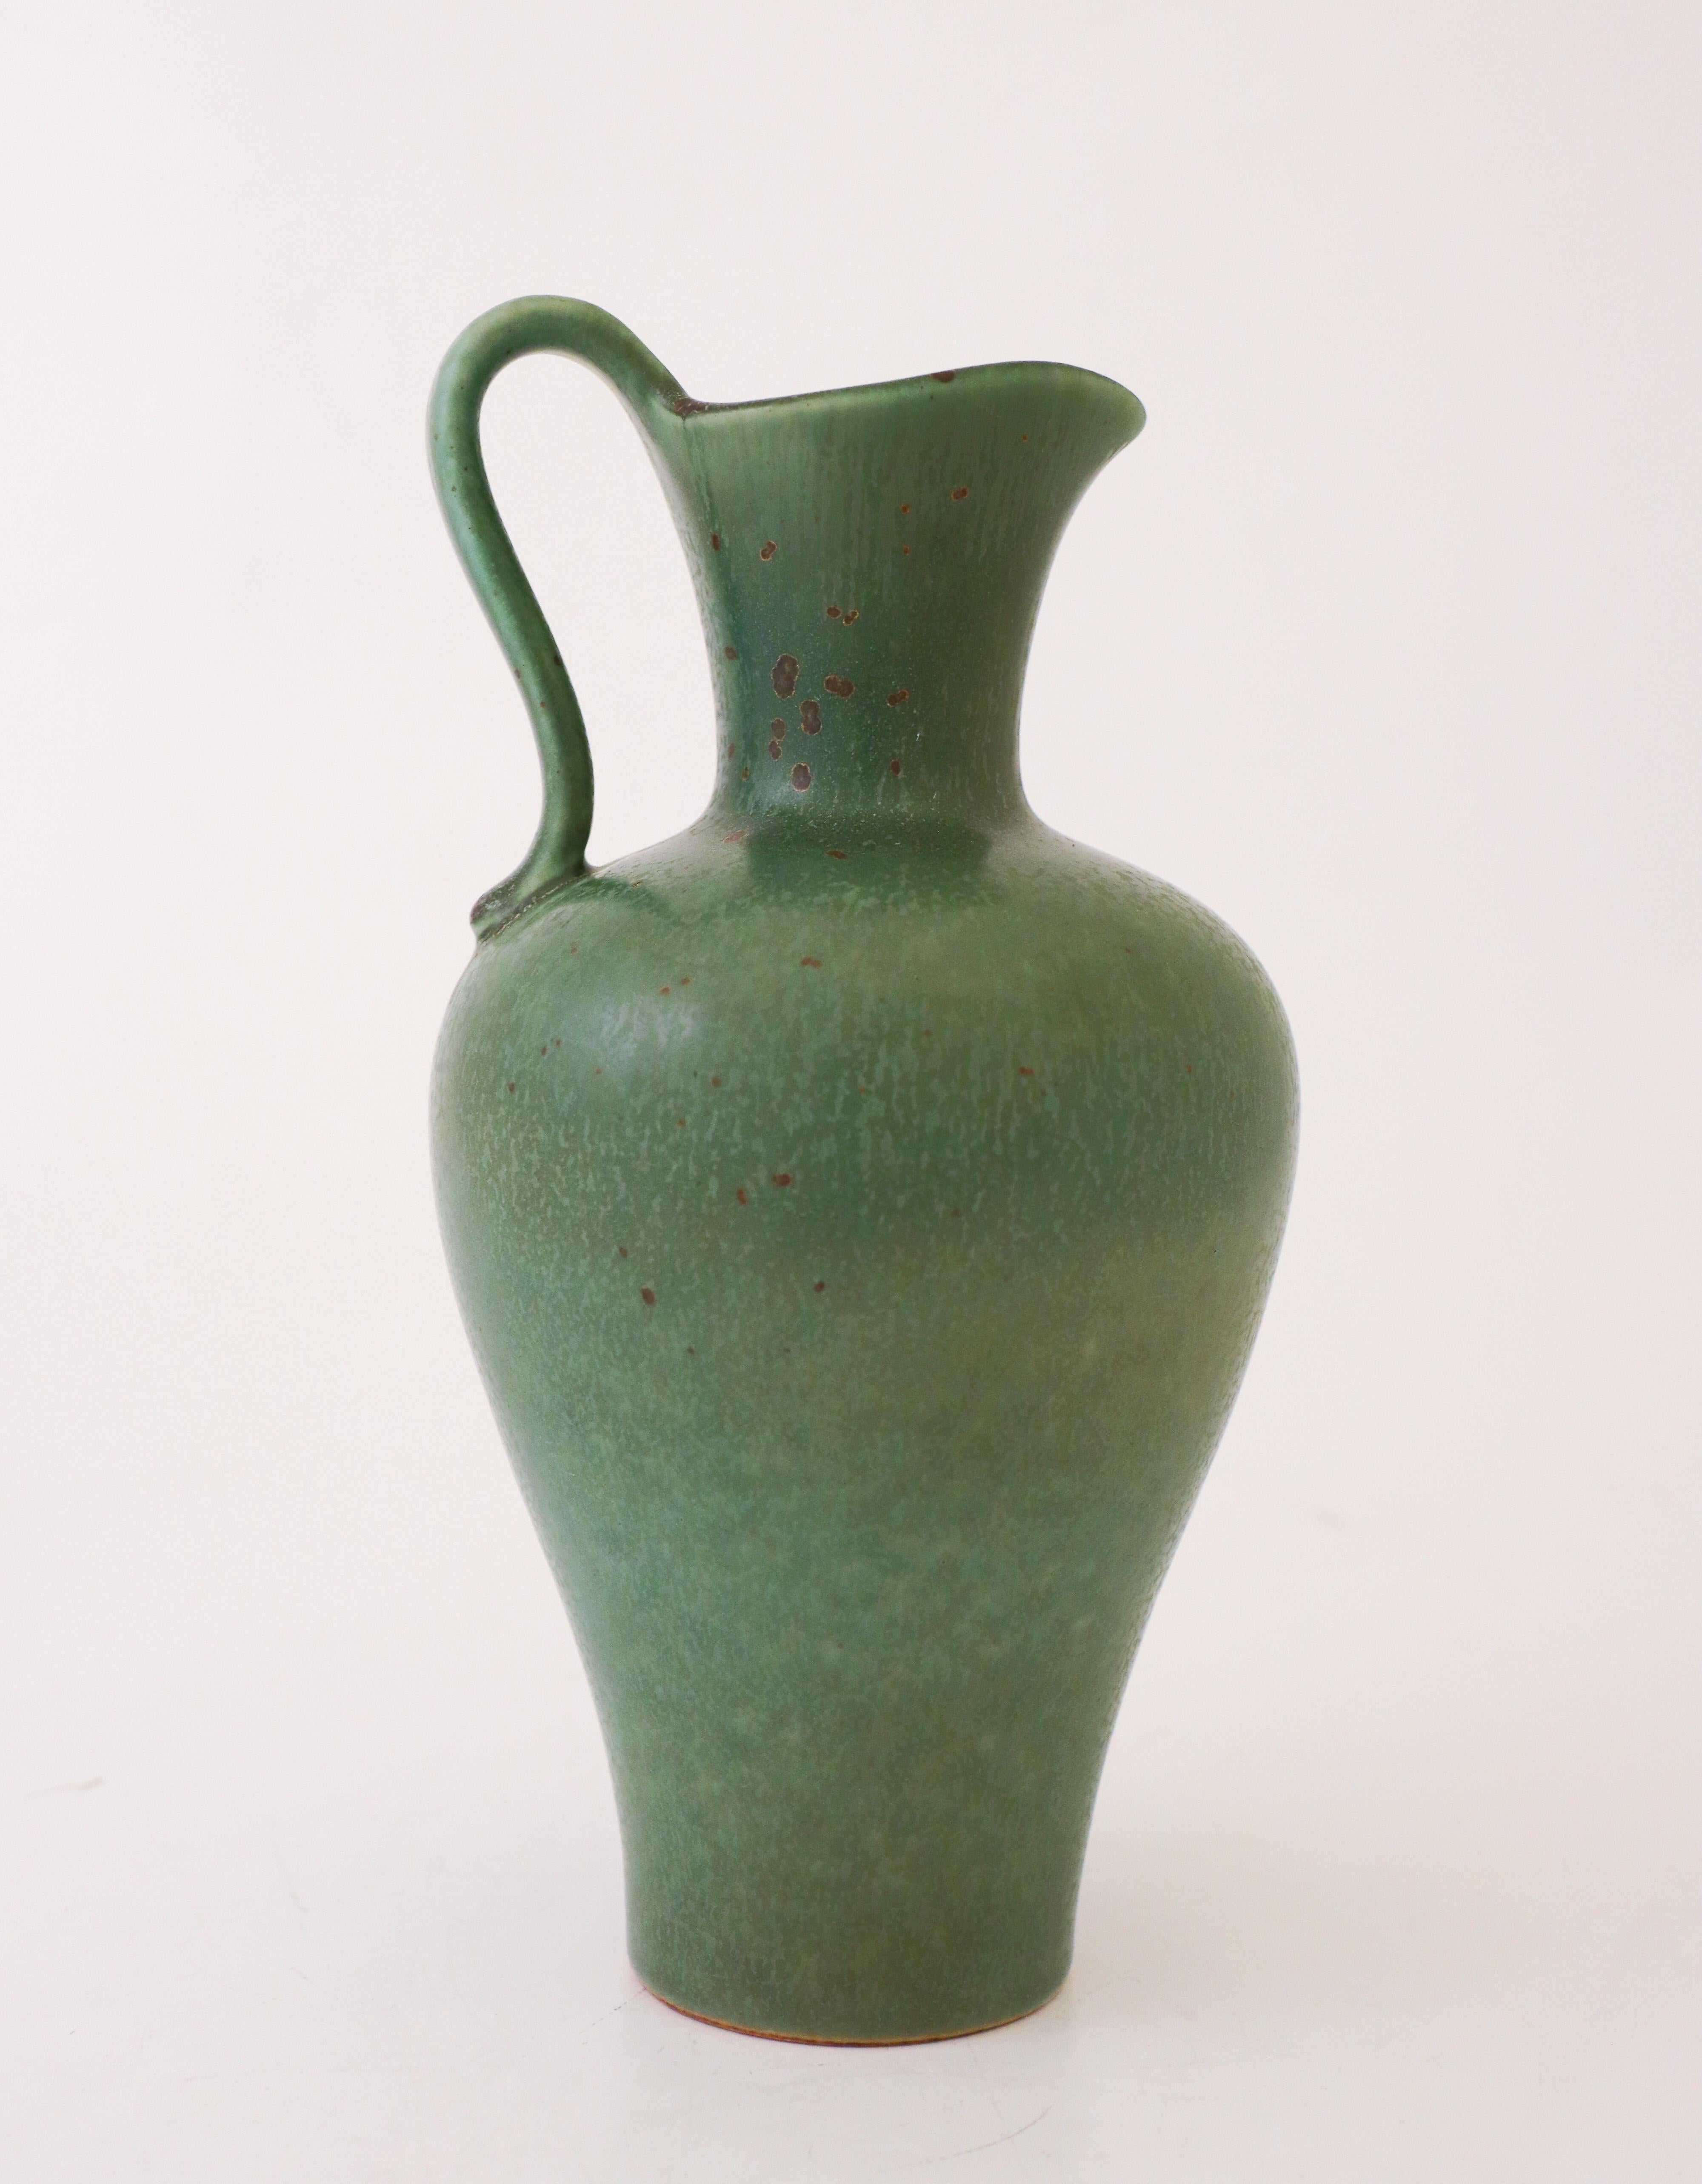 Un vase vert profond avec une belle glaçure, conçu par Gunnar Nylund à Rörstrand, le vase mesure 22,5 cm (9